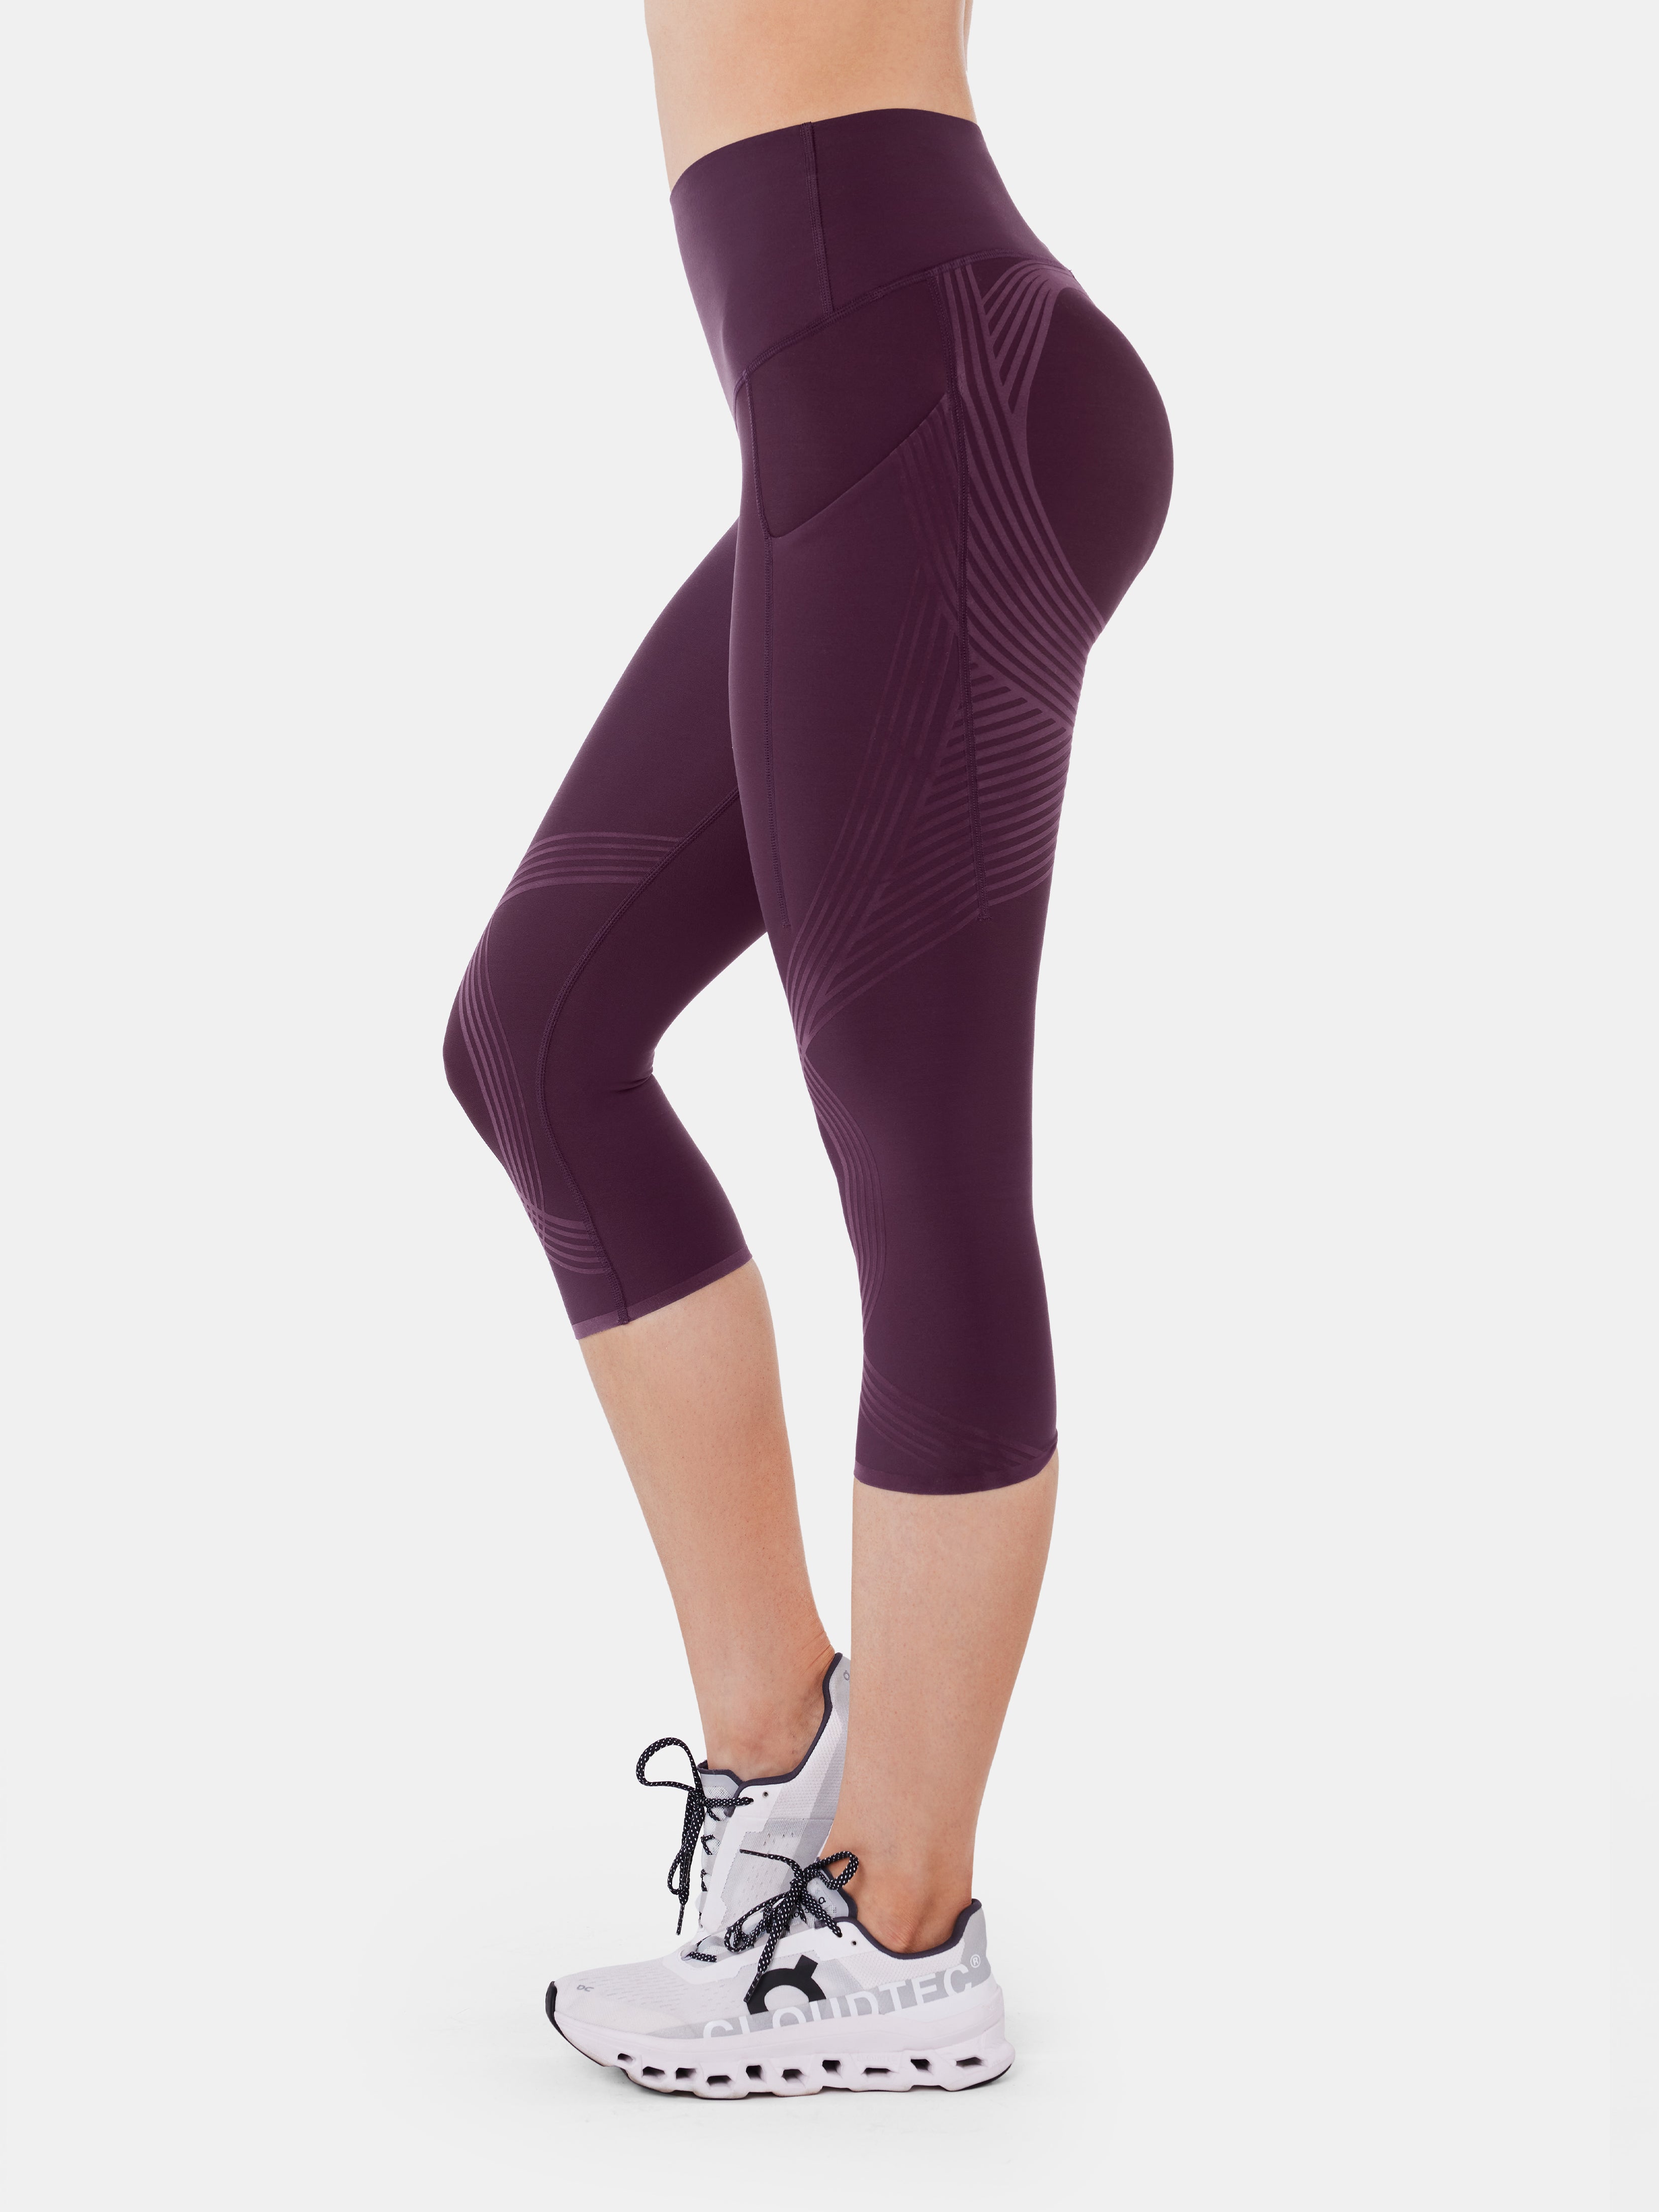 Pockets Capri Length. Nike.com